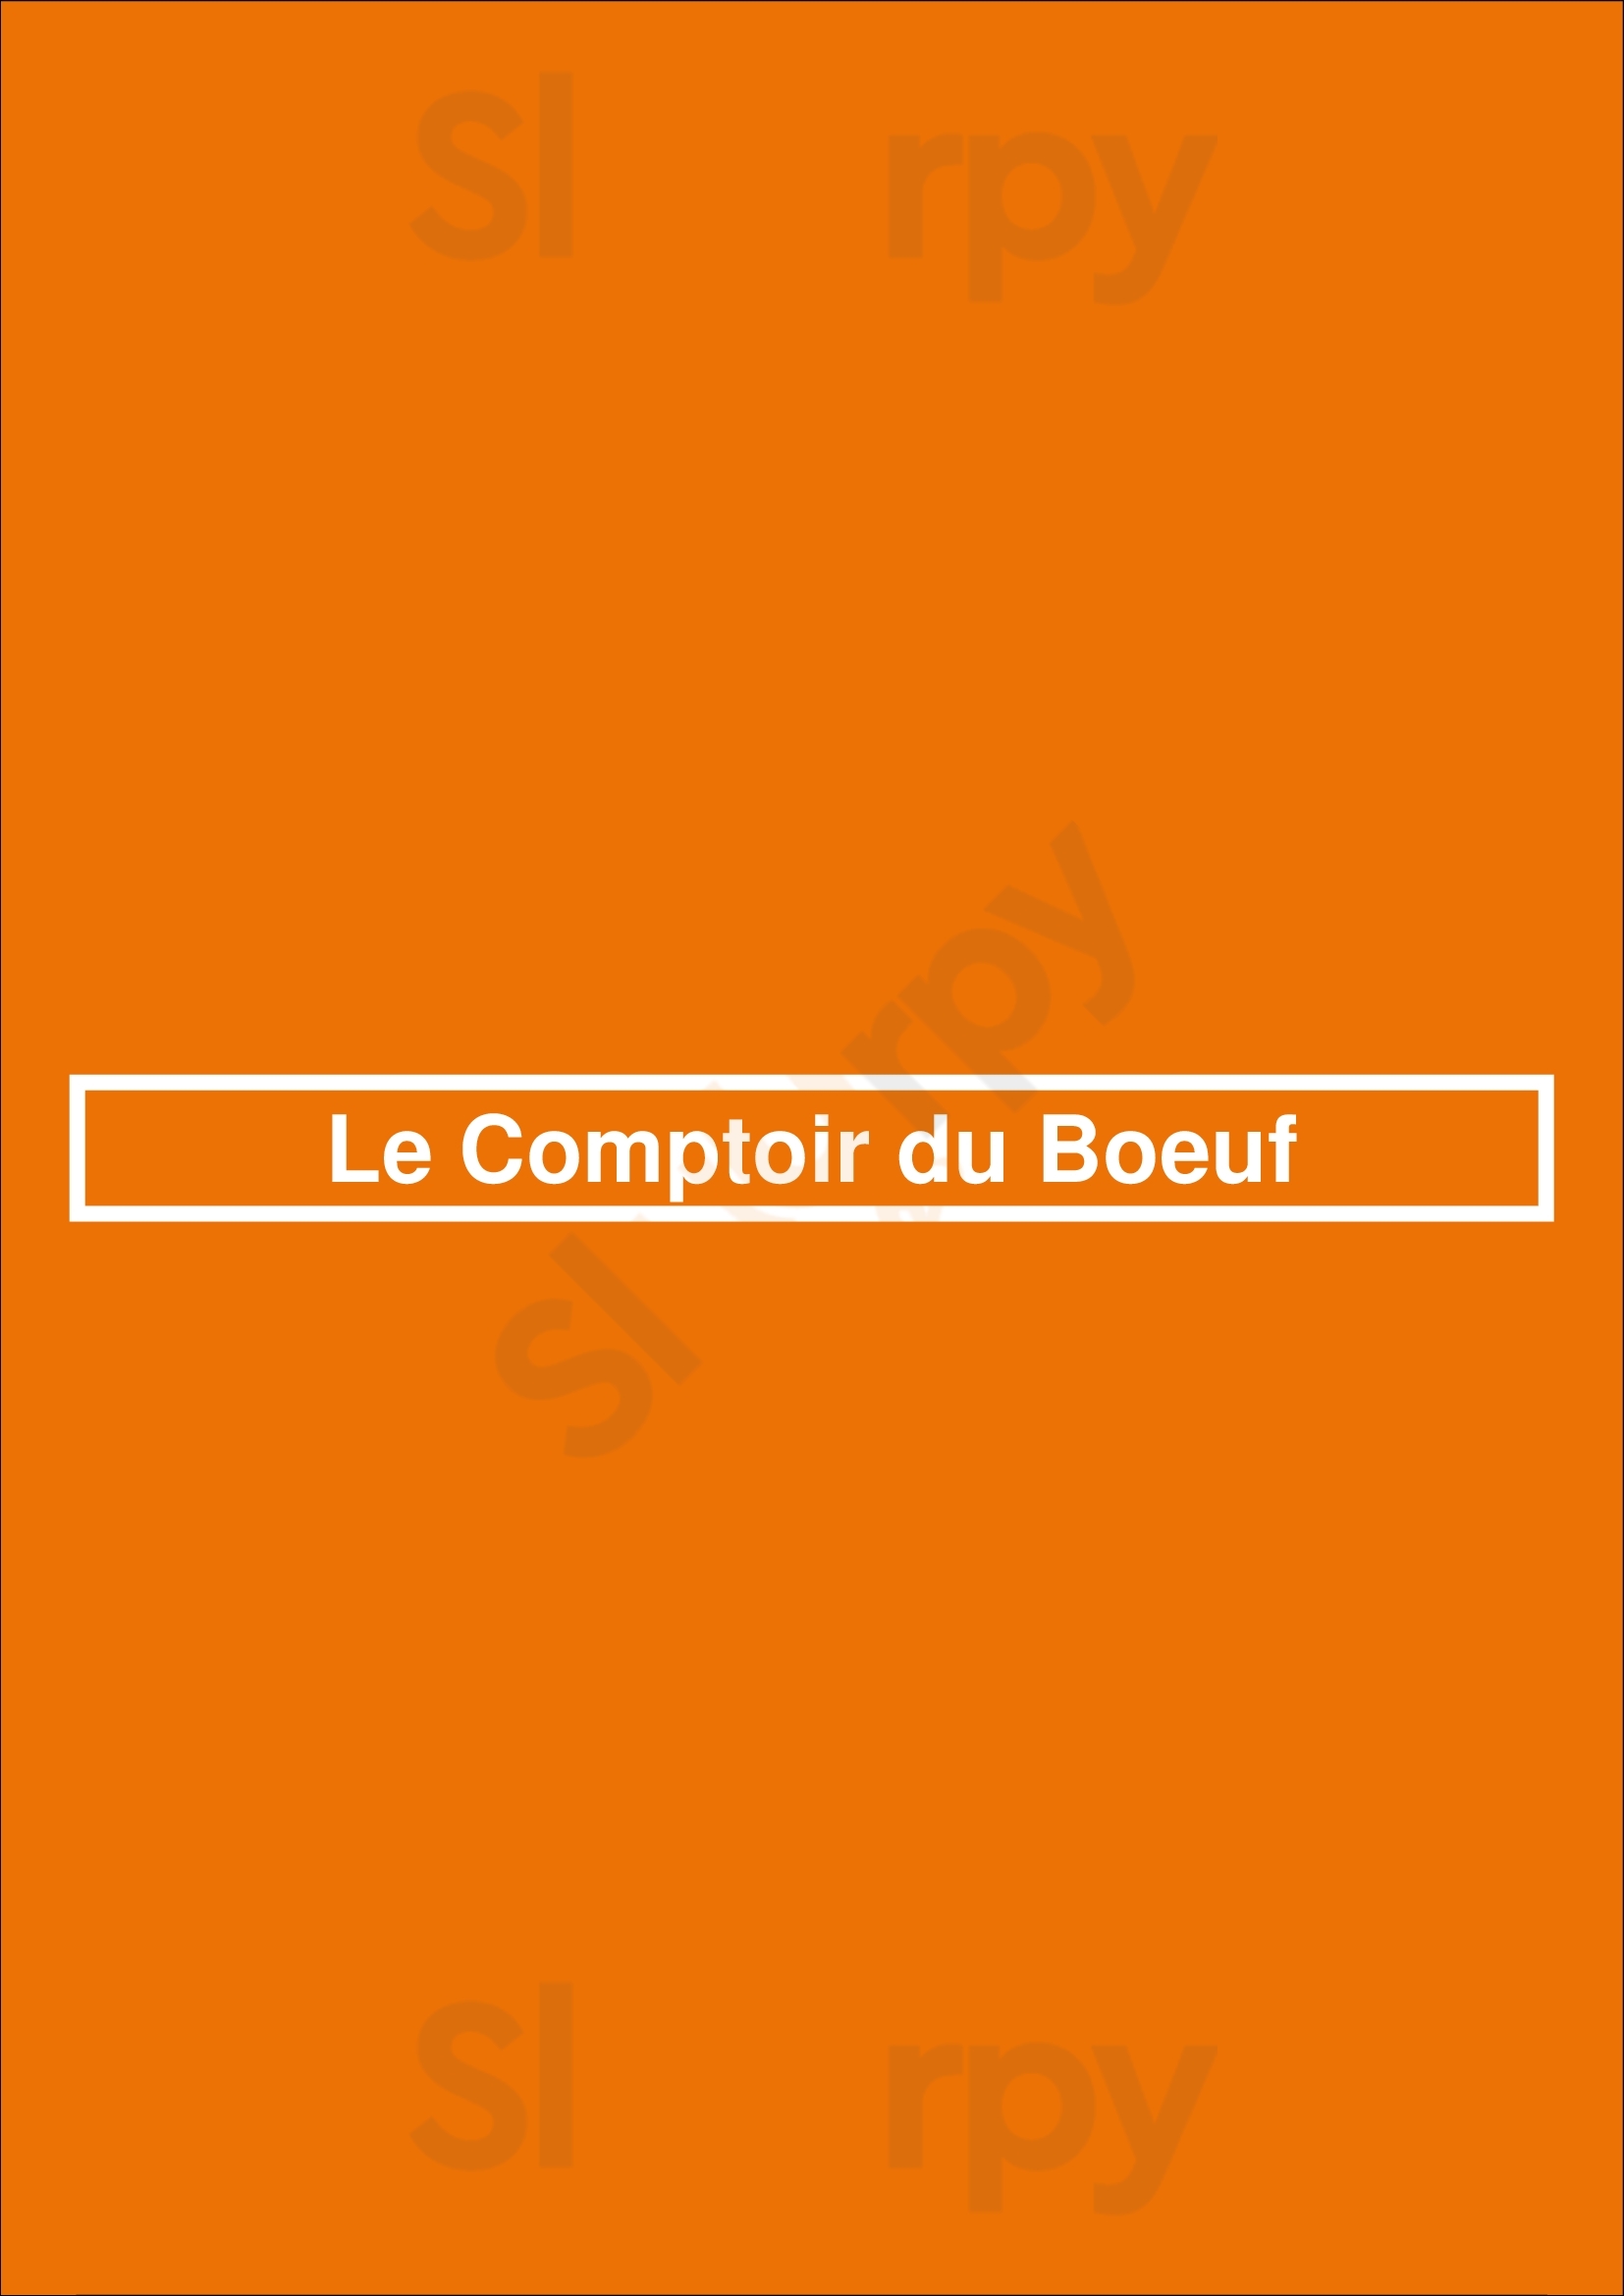 Le Comptoir Du Boeuf Reims Menu - 1